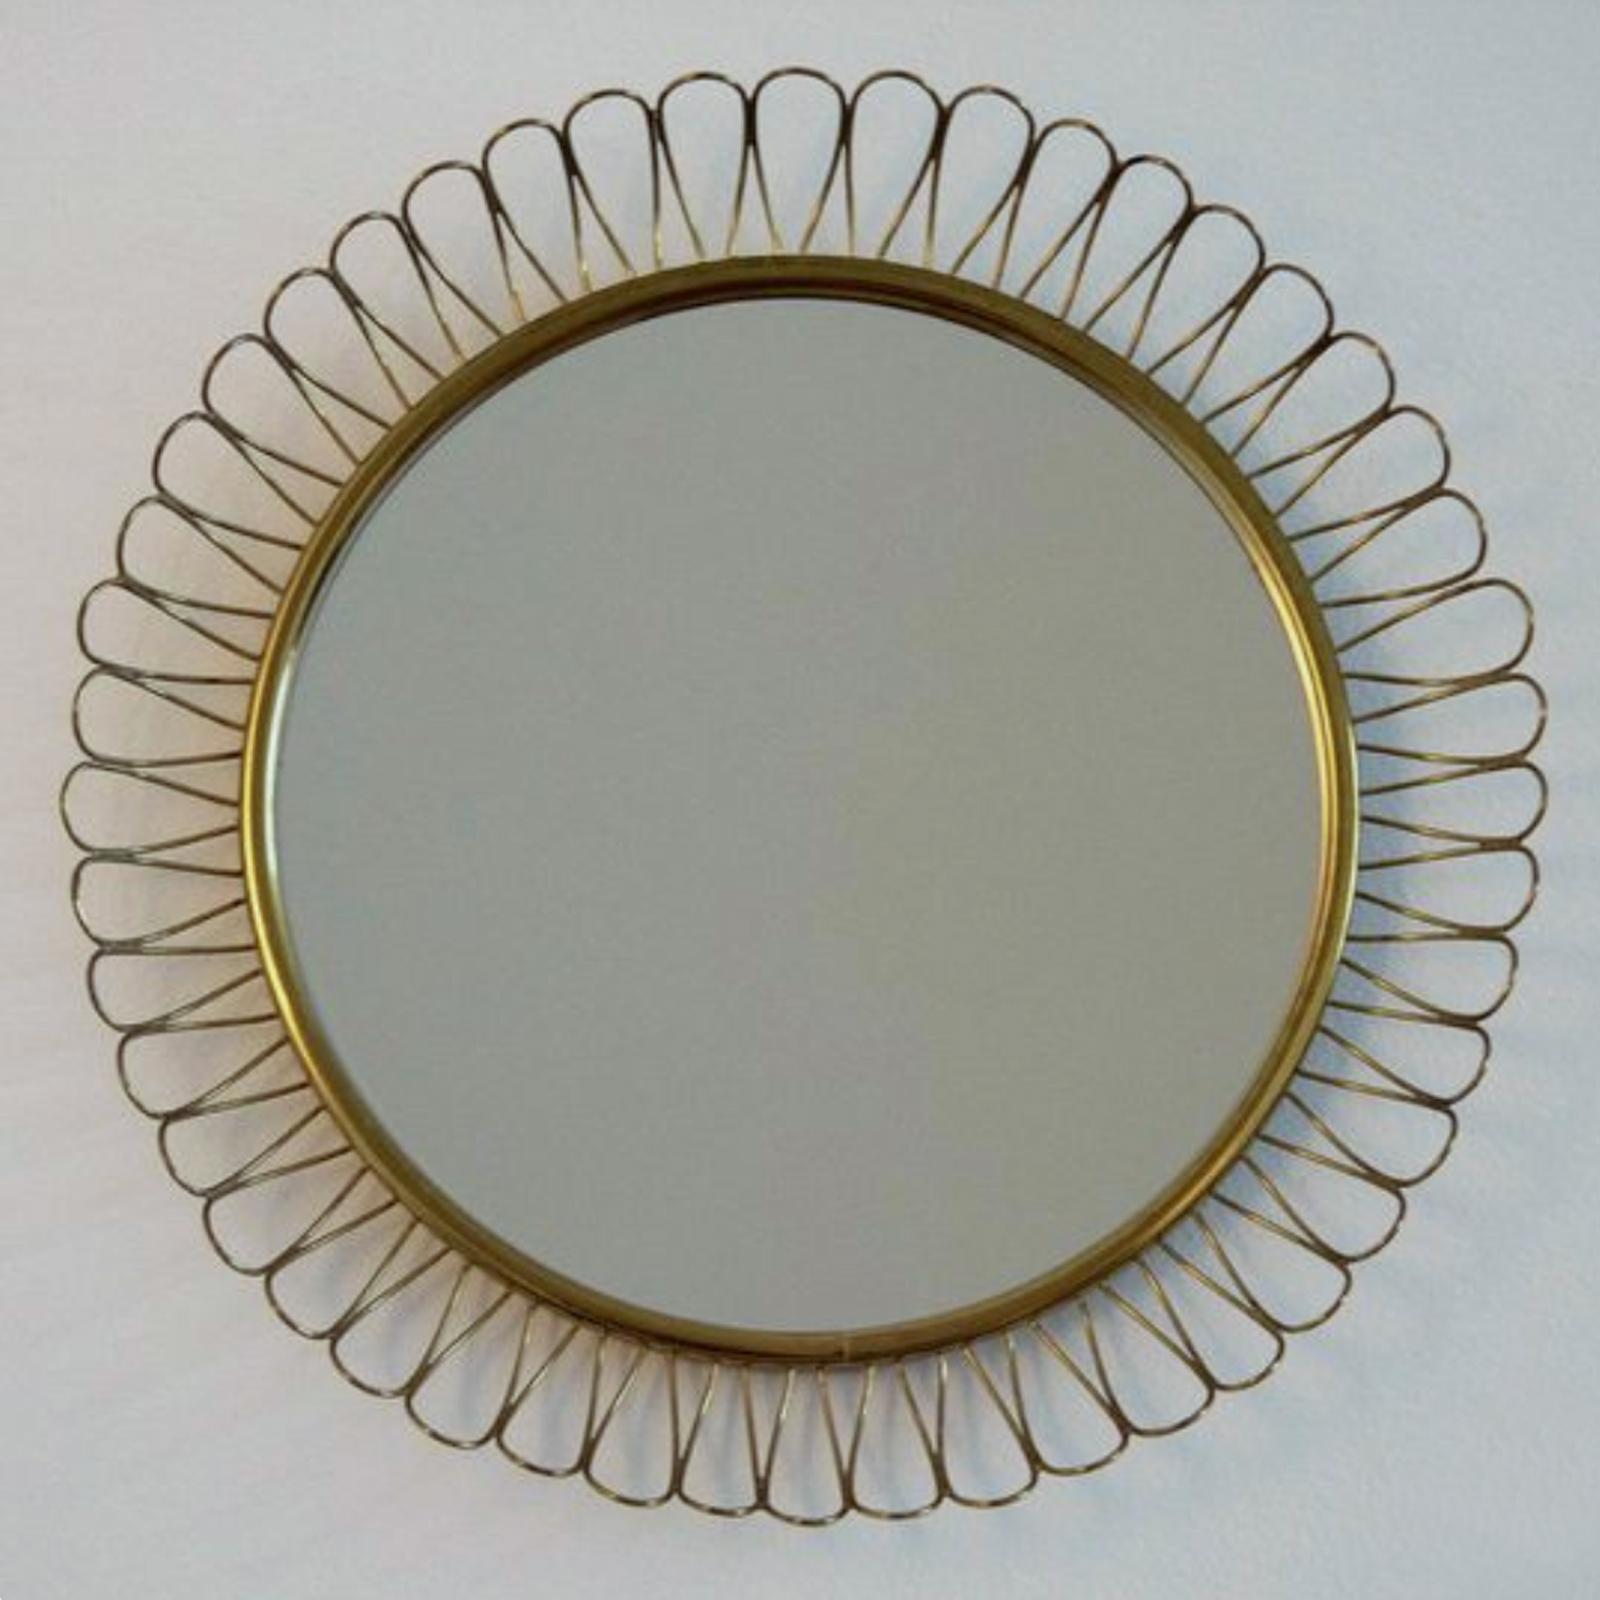 Midcentury Sculptural Round Brass Wall Mirror, Sweden, 1950s For Sale 4